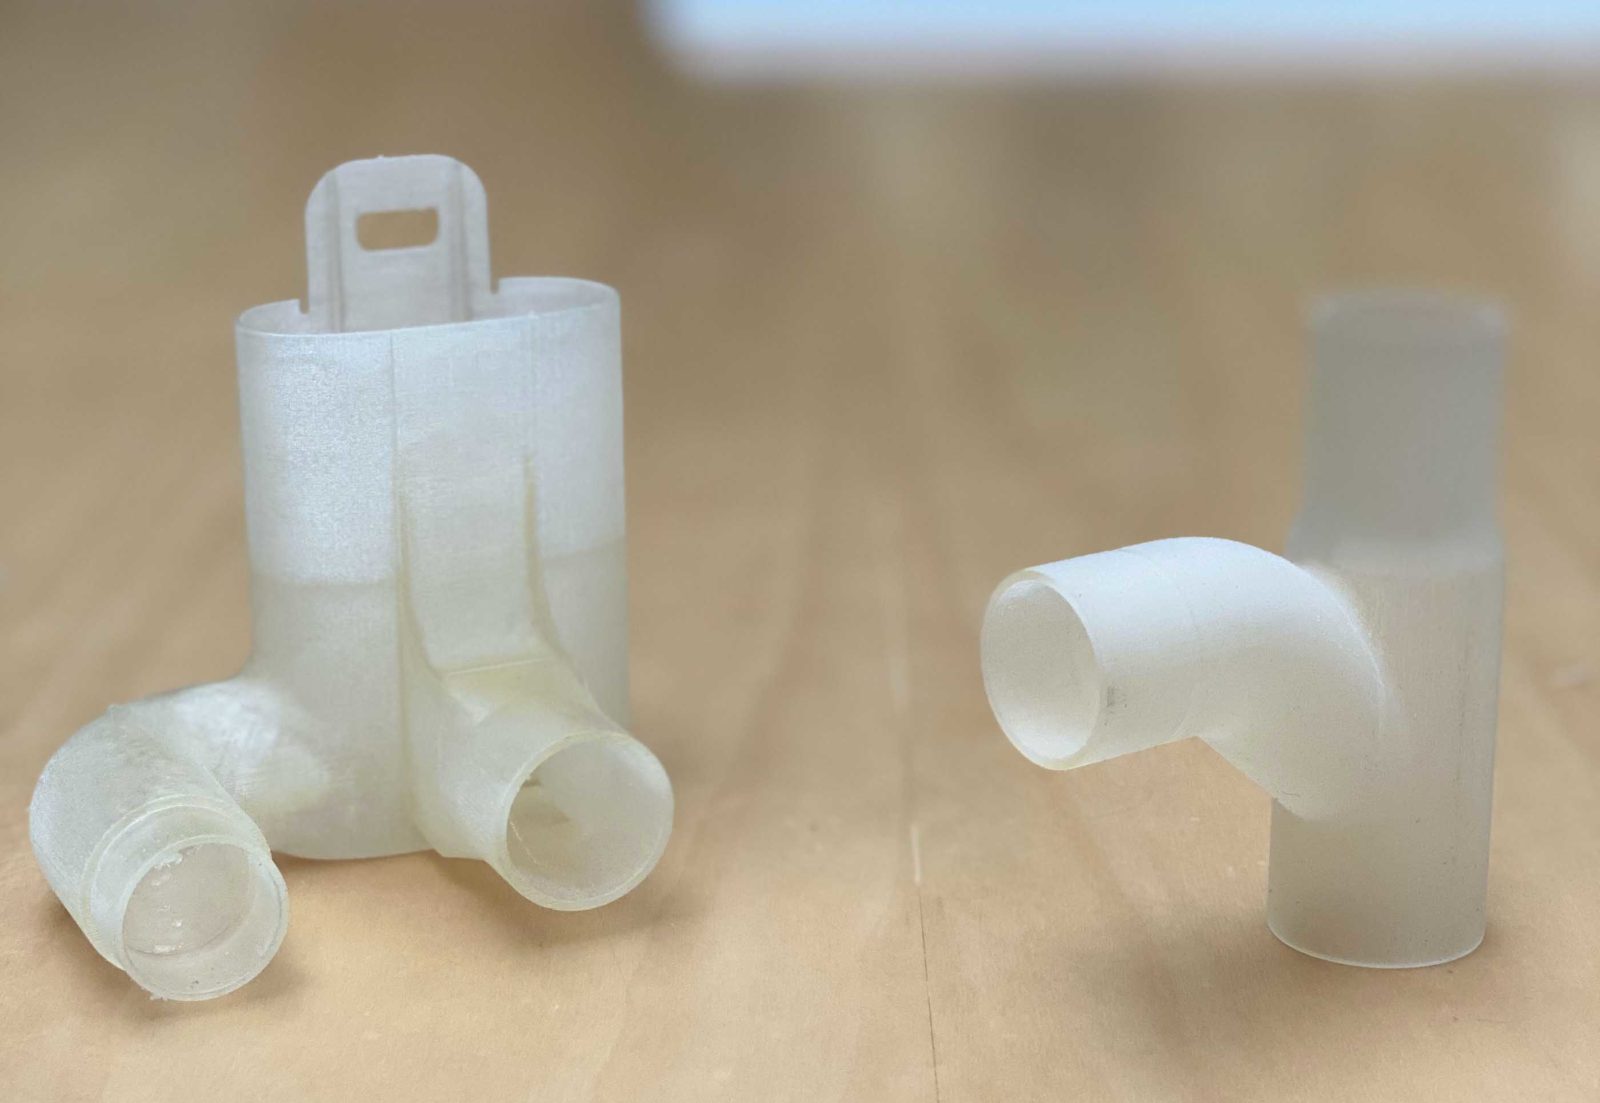 Nobili Rubinetterie stampa in 3D le valvole per trasformare le maschere Decathlon in respiratori